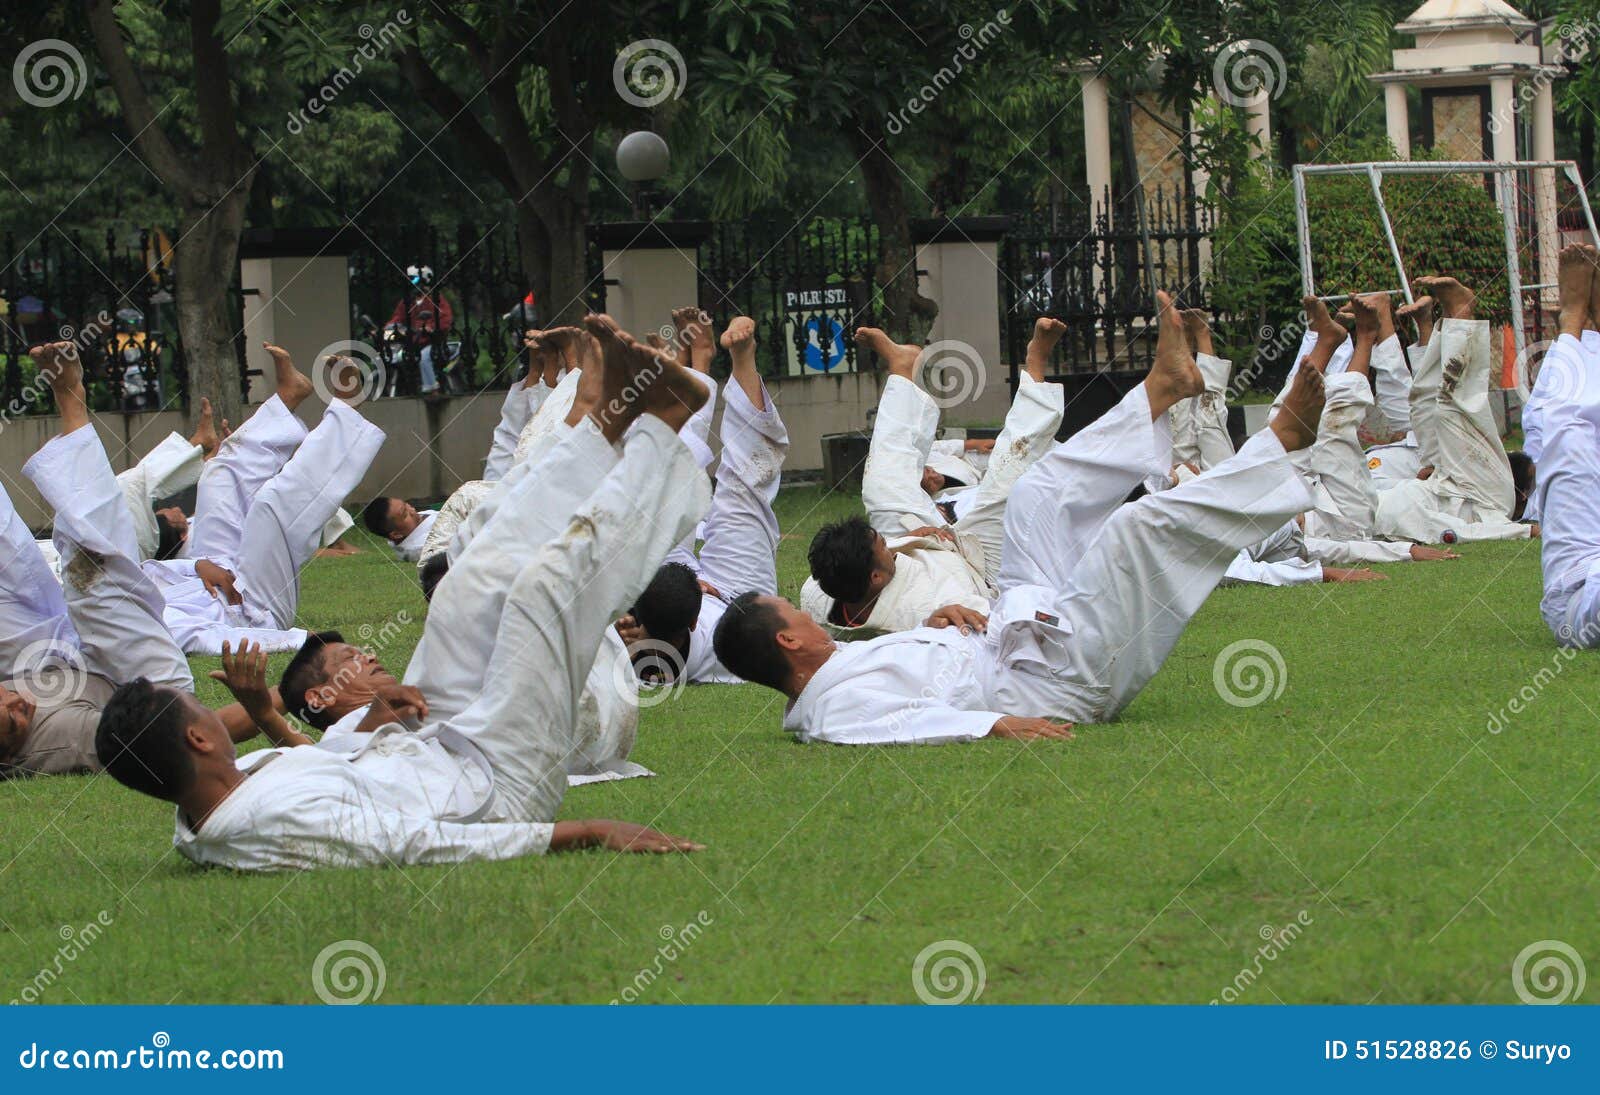 Limpie el judo practicante en la ciudad de Java a solas, central, Indonesia